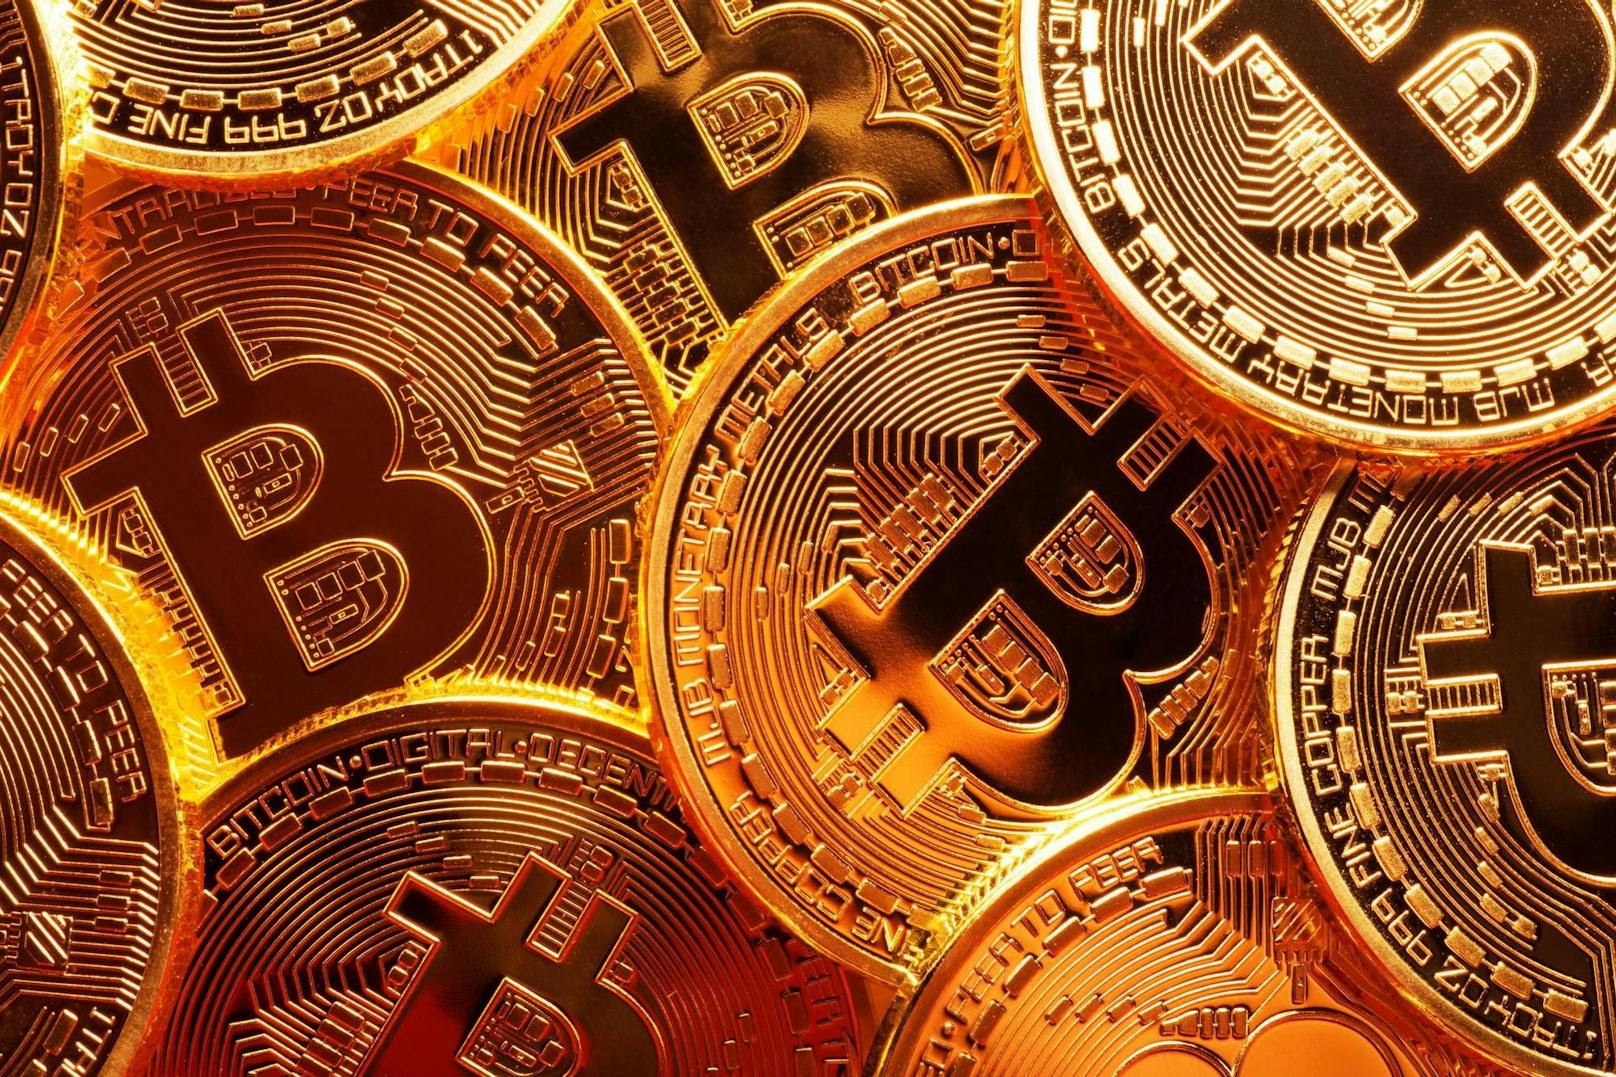 Bei Bezahlmethoden liegen Bitcoin und andere Kryptowährung auf dem letzten Rang.